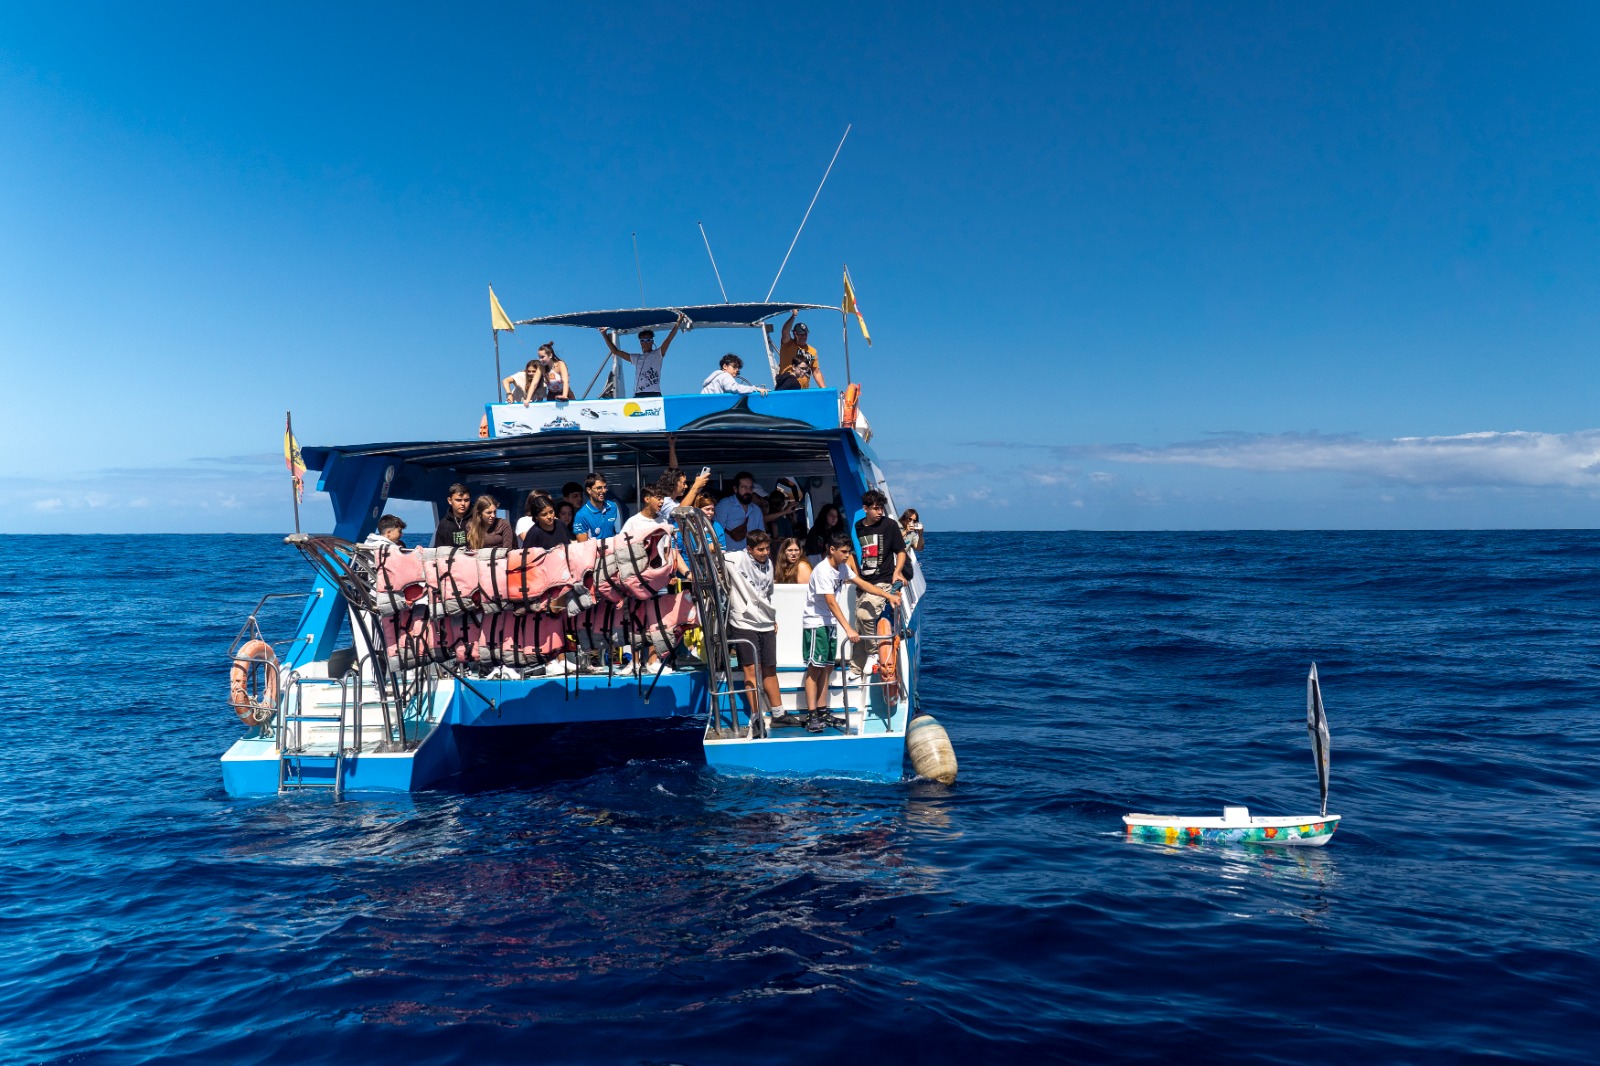 Alumnos del IES Eusebio Barreto de La Palma lanzan al mar el bote educativo Buche Salado II para cruzar el Atlántico